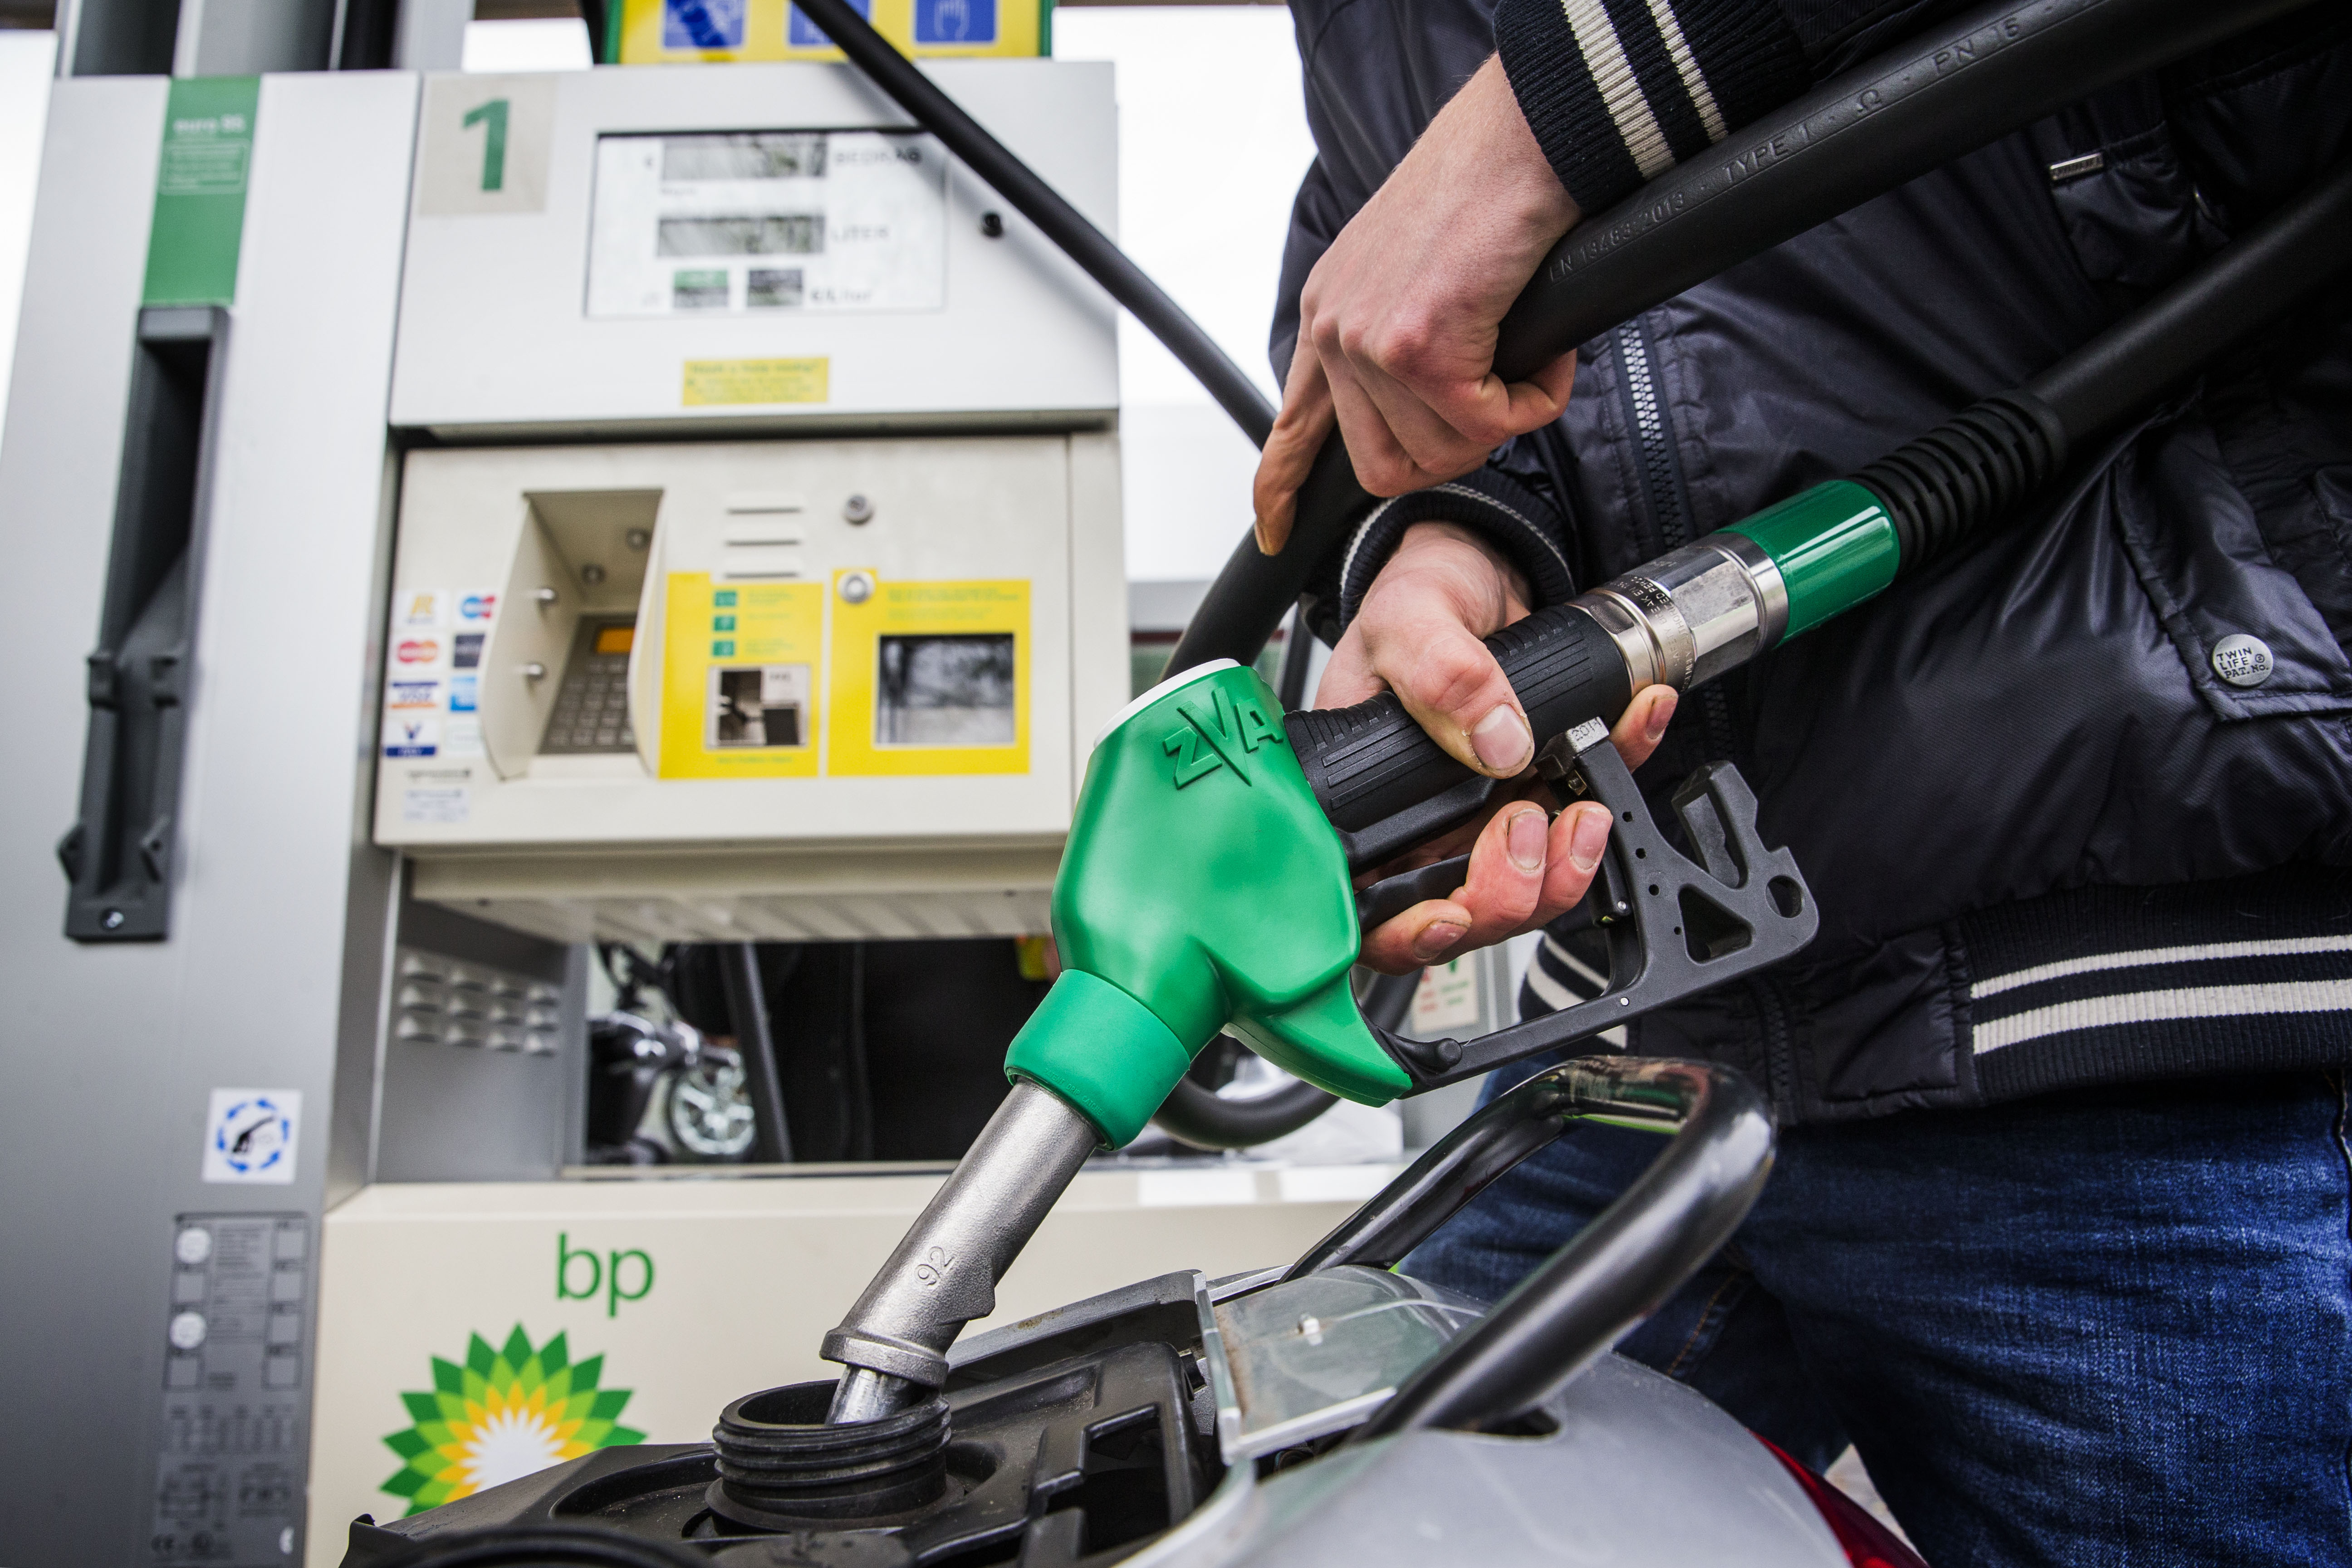 Benzine wordt duurder door de stijging van de olieprijs. Maar hoeveel stijgt de prijs aan de pomp?